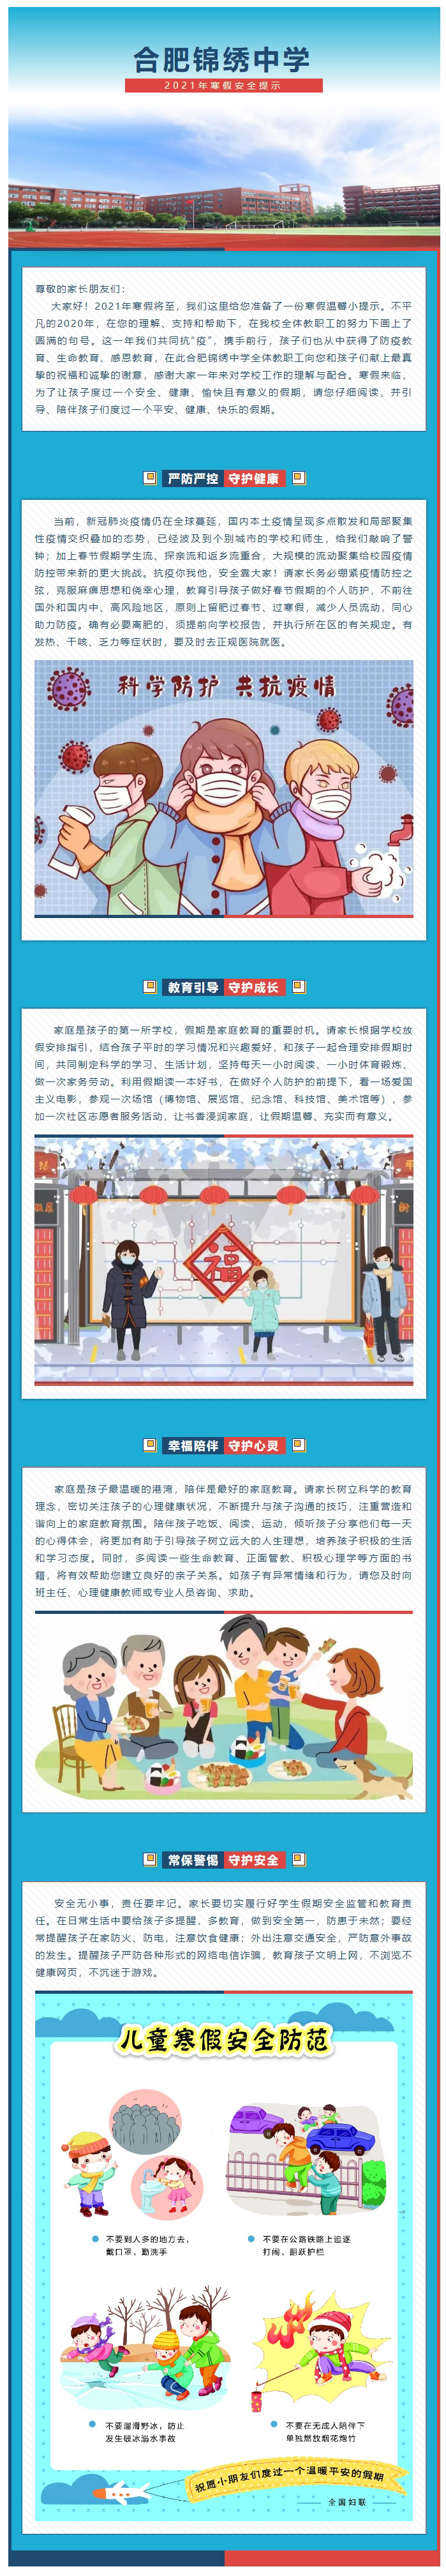 紧绷安全意识弦 · 奏出平安快乐歌 _ 合肥锦绣中学2021年寒假安全提示